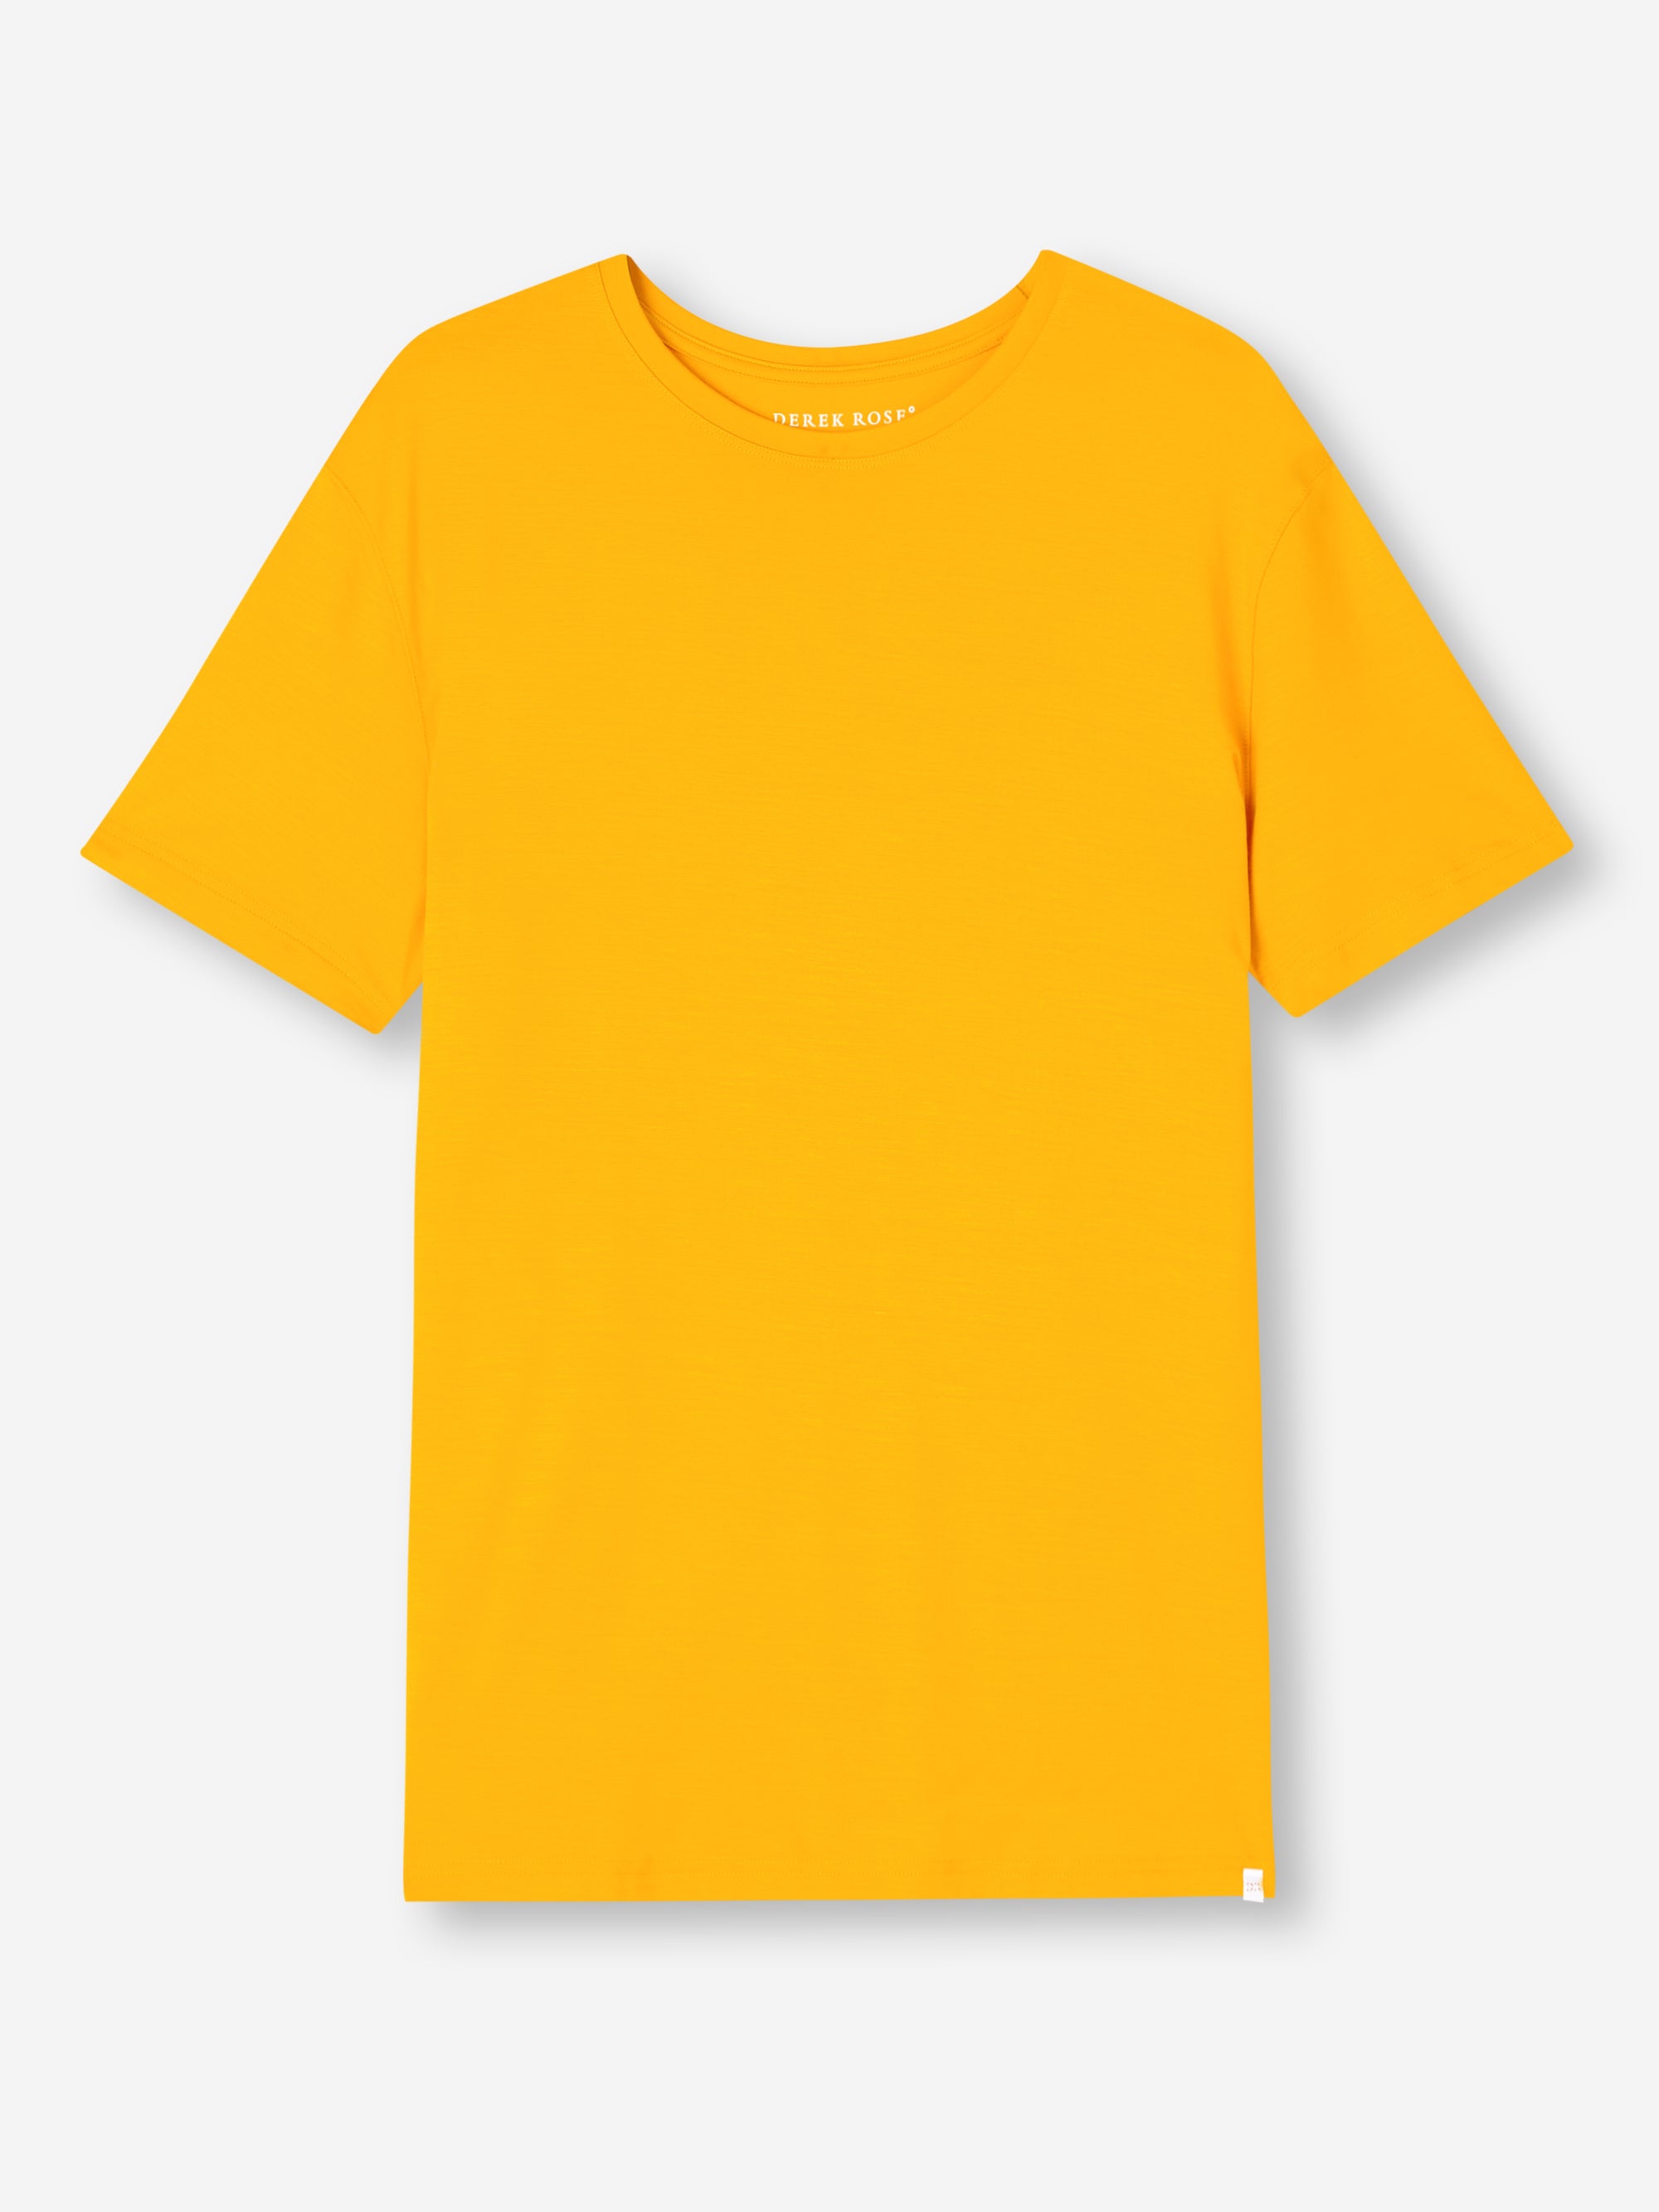 Men's T-Shirt Basel Micro Modal Stretch Saffron